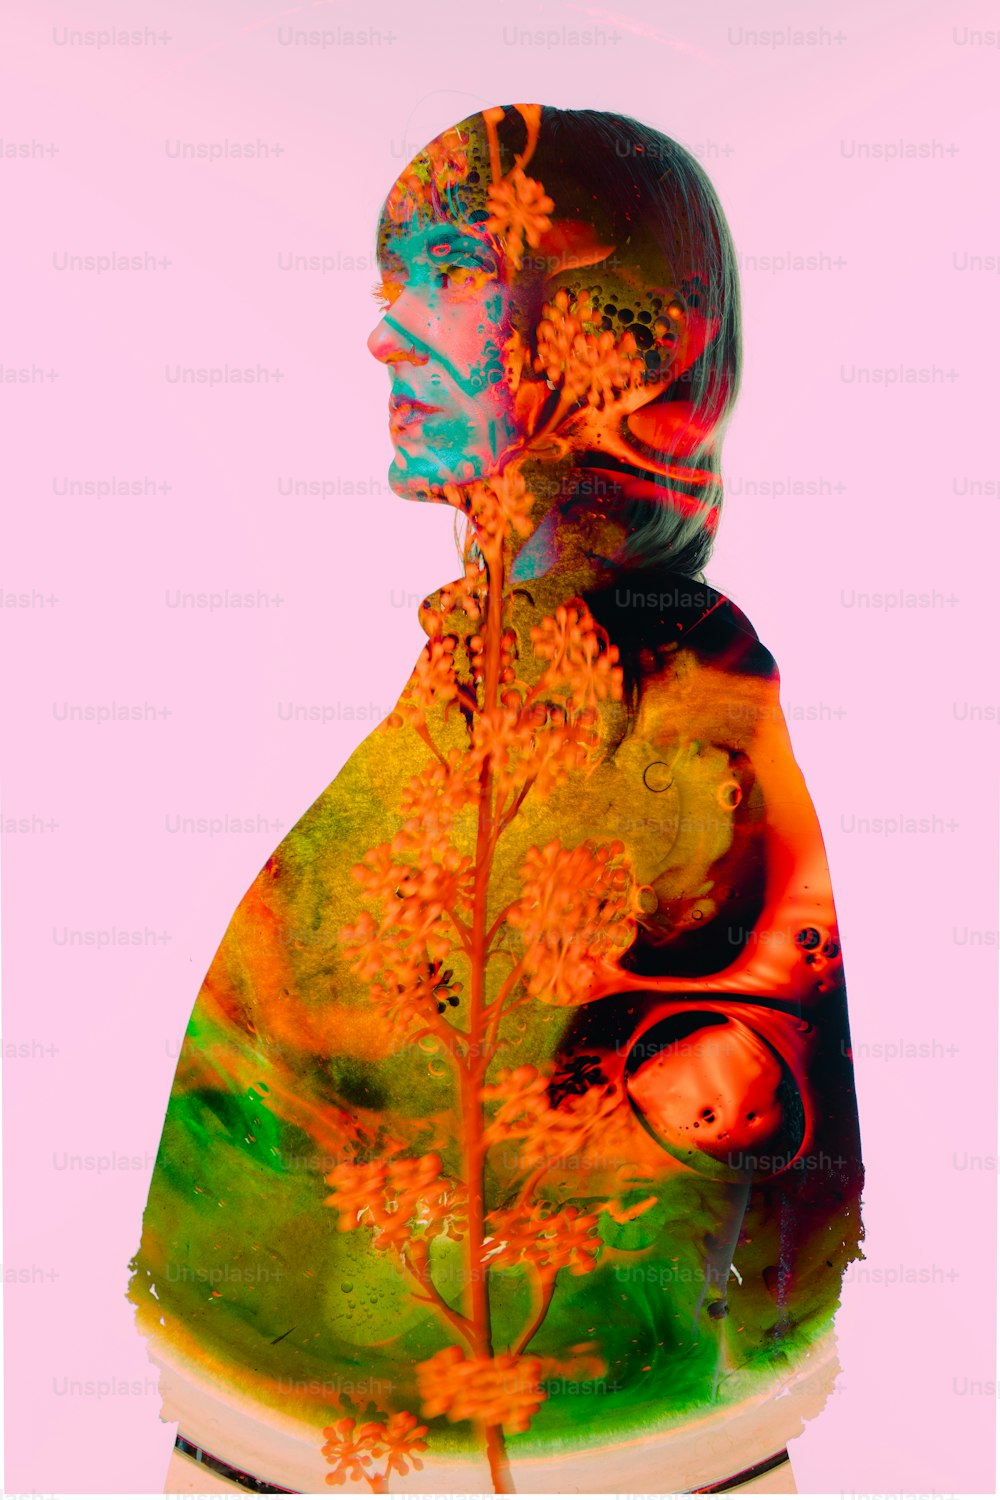 Il volto di una donna è mostrato in un'immagine multicolore